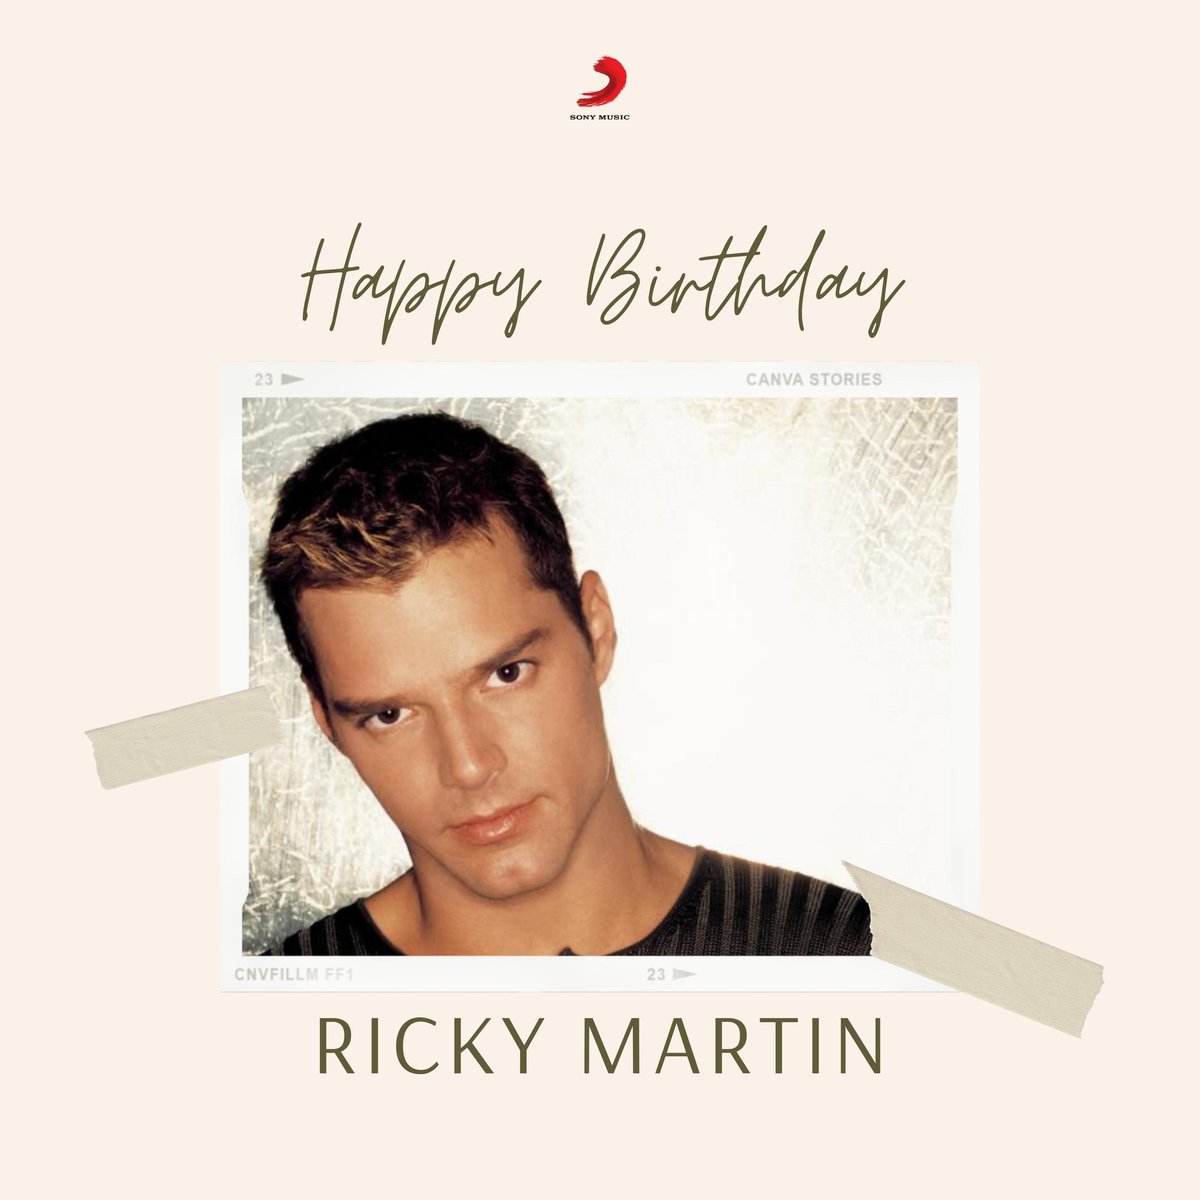 Happy birthday to the King of Latin Pop, Ricky Martin! 